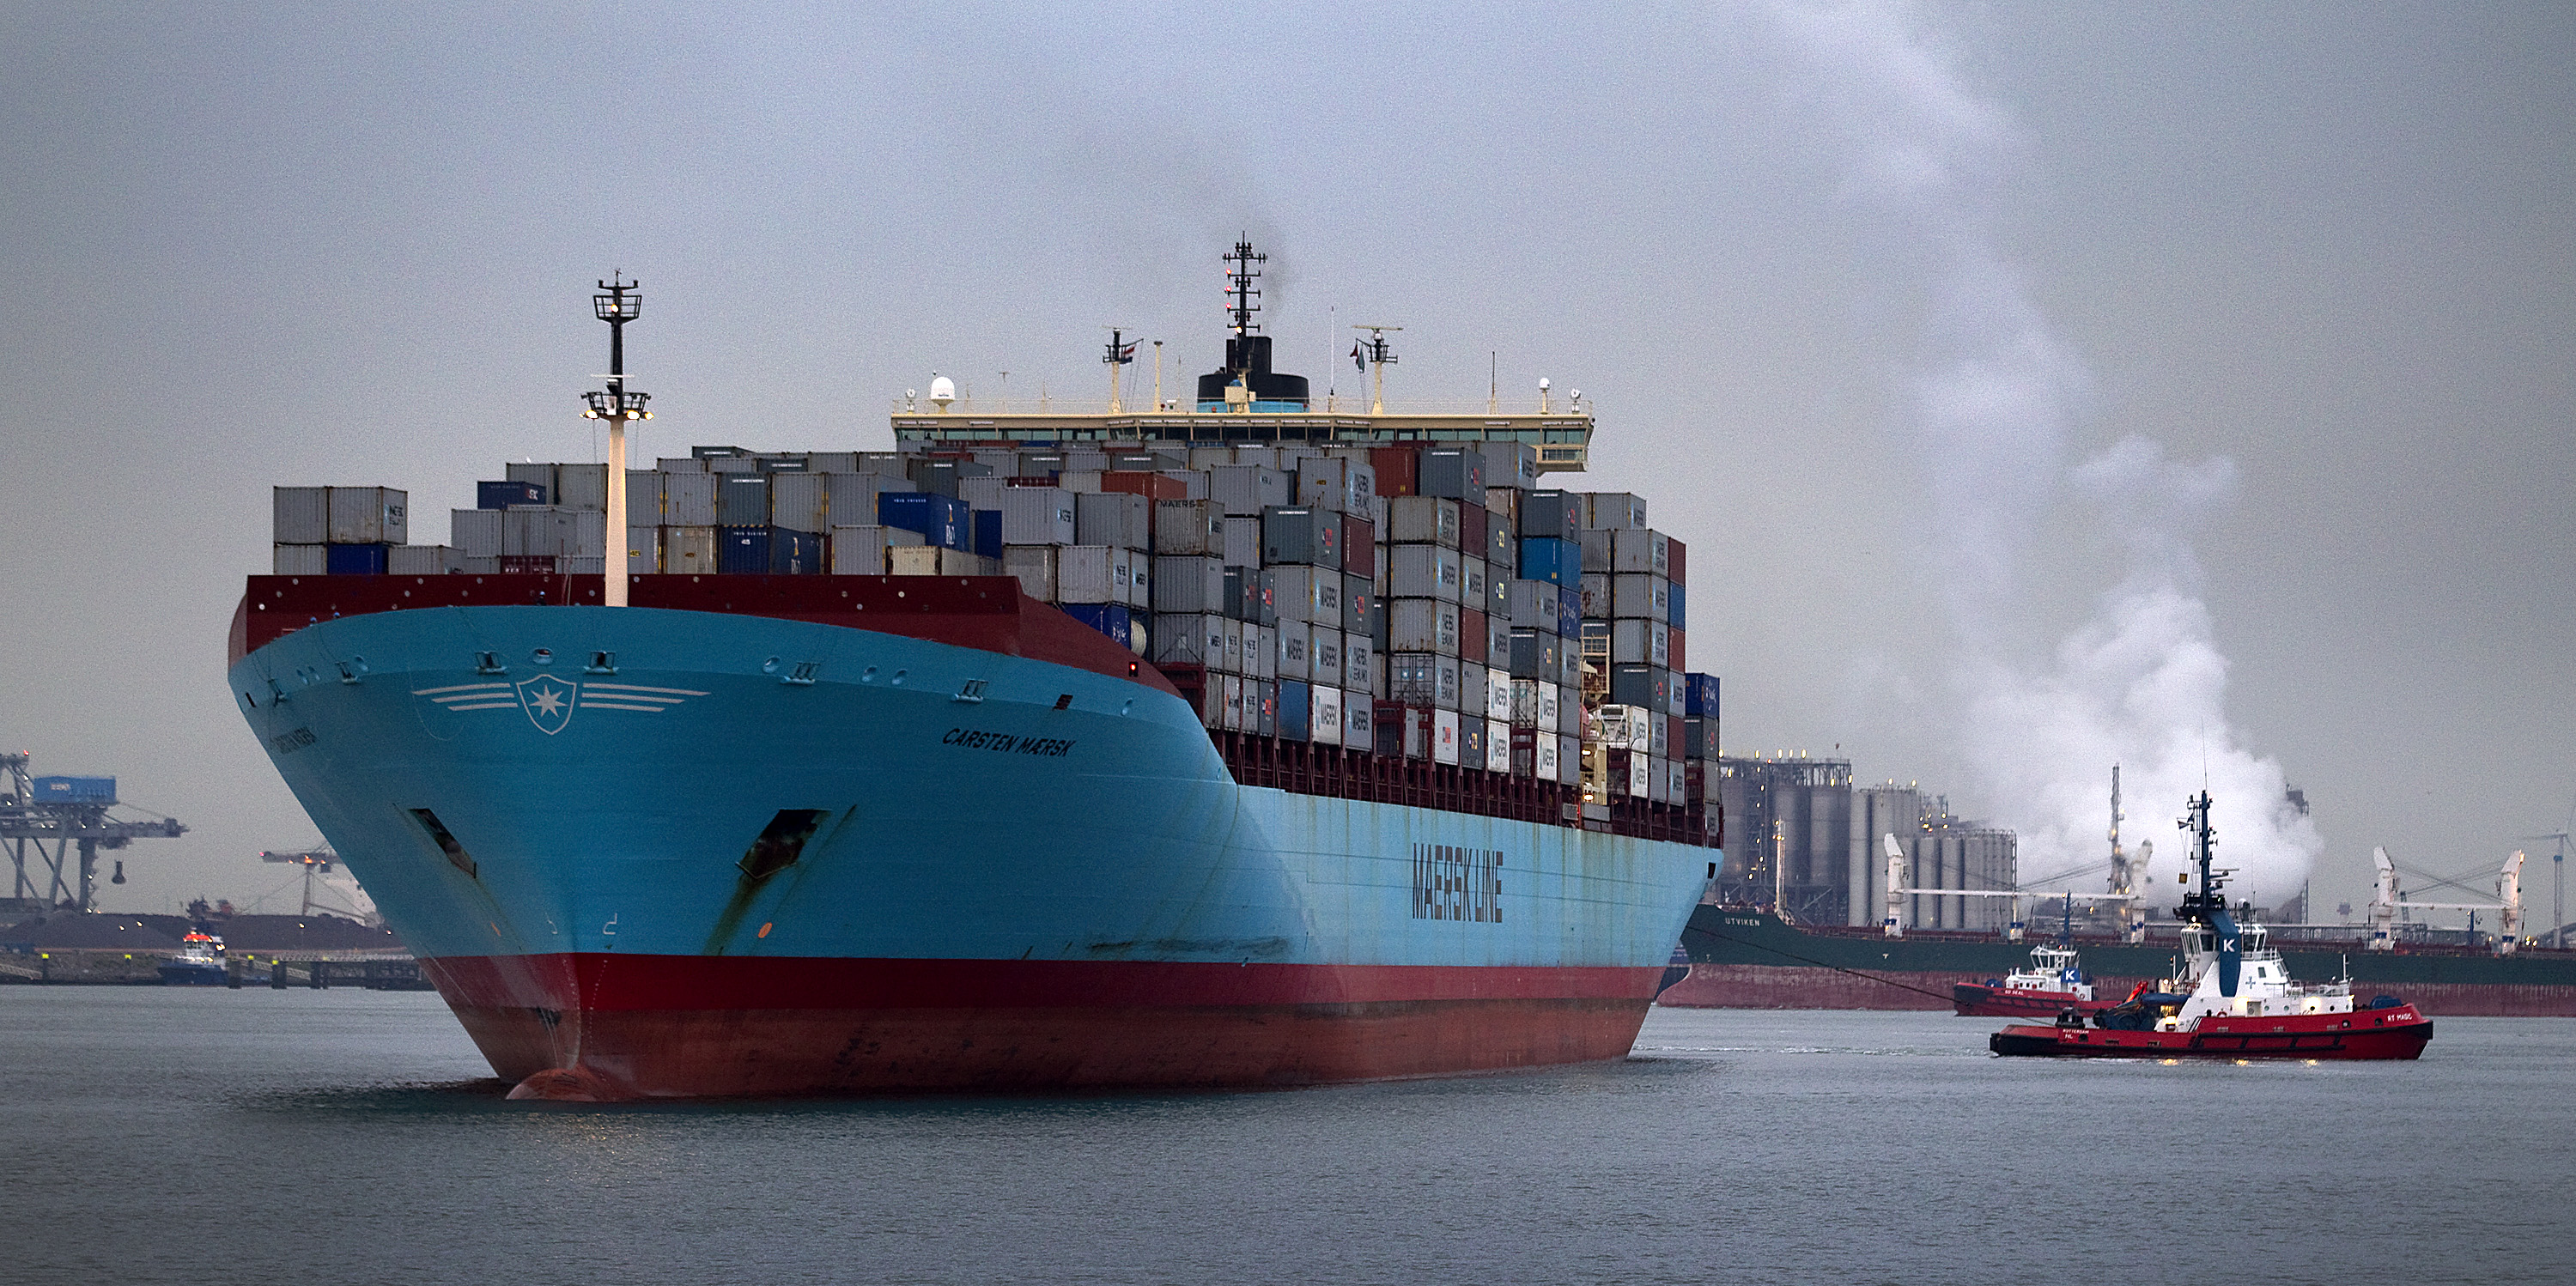 Maersk annonce des émissions réduites de 40% en 2020 et un navire neutre en carbone en 2023